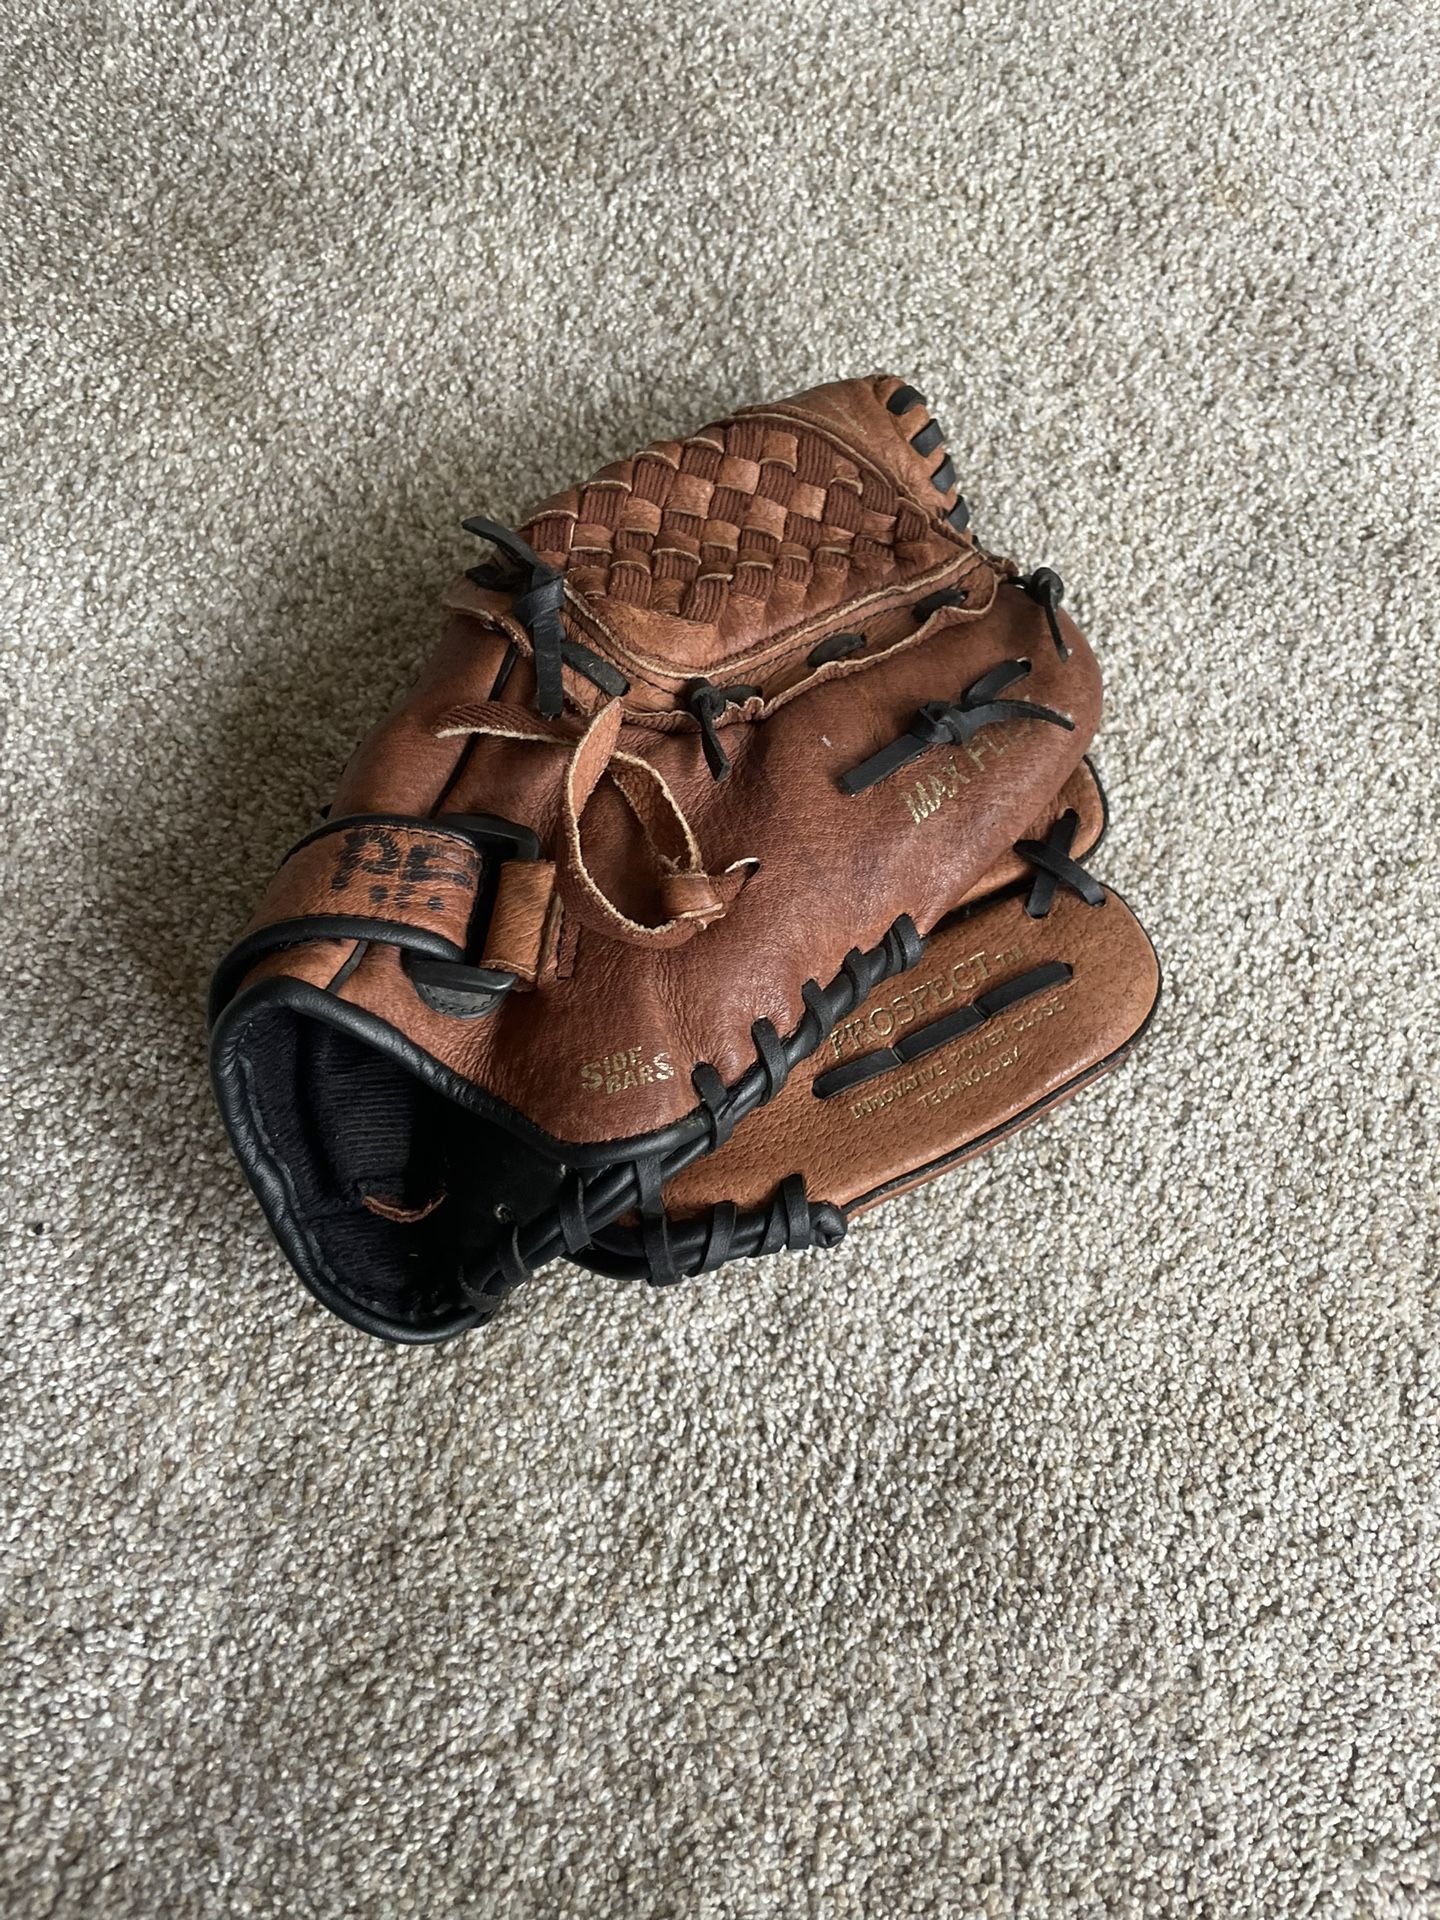 Baseball glove 11 inches